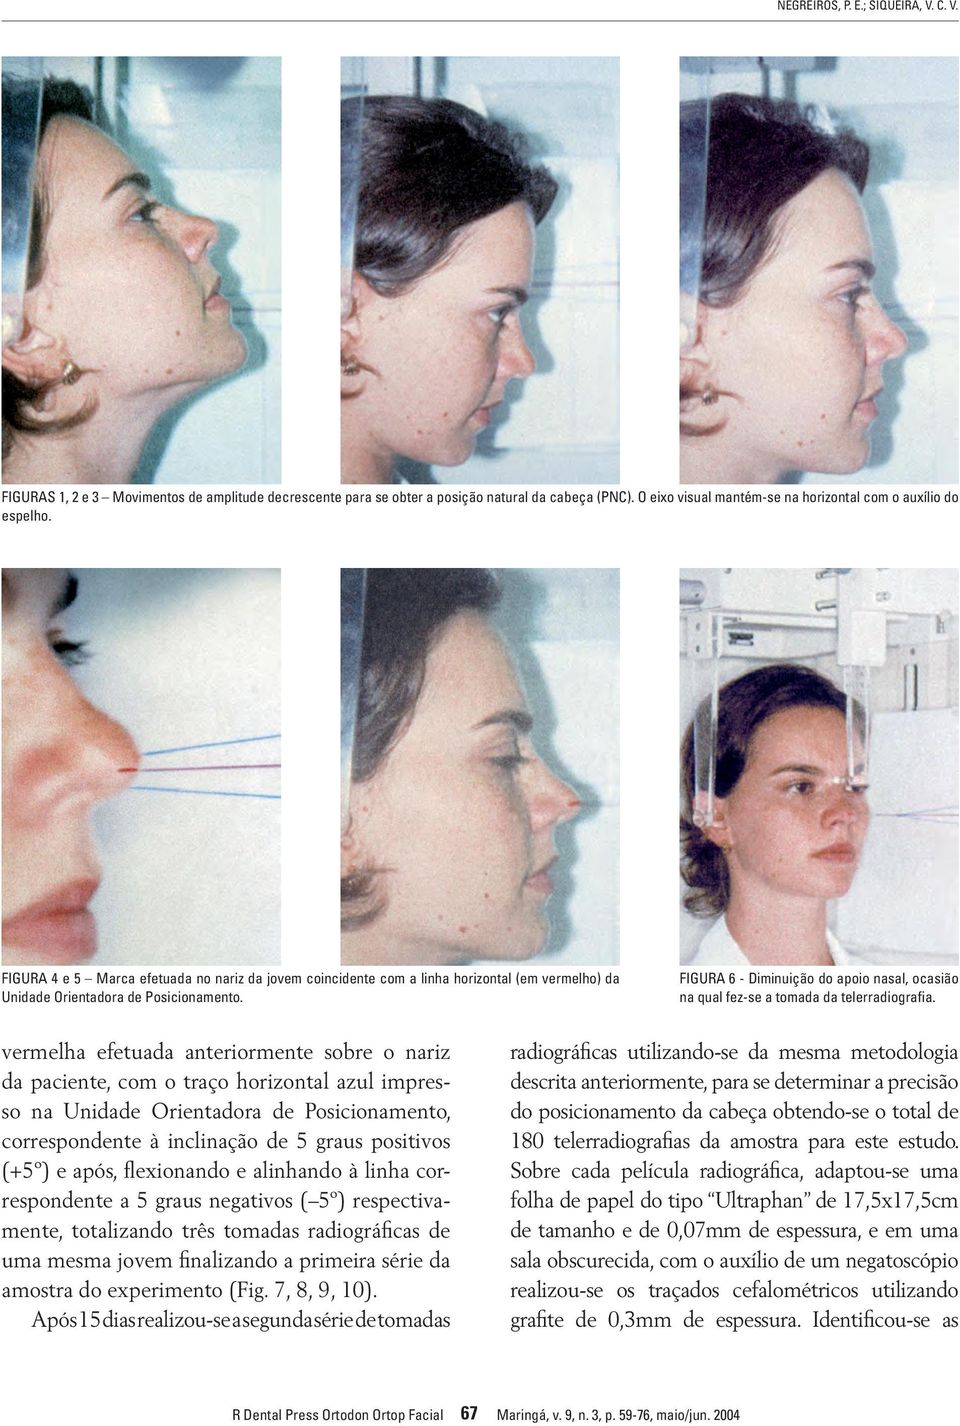 Figura 6 - Diminuição do apoio nasal, ocasião na qual fez-se a tomada da telerradiografia.